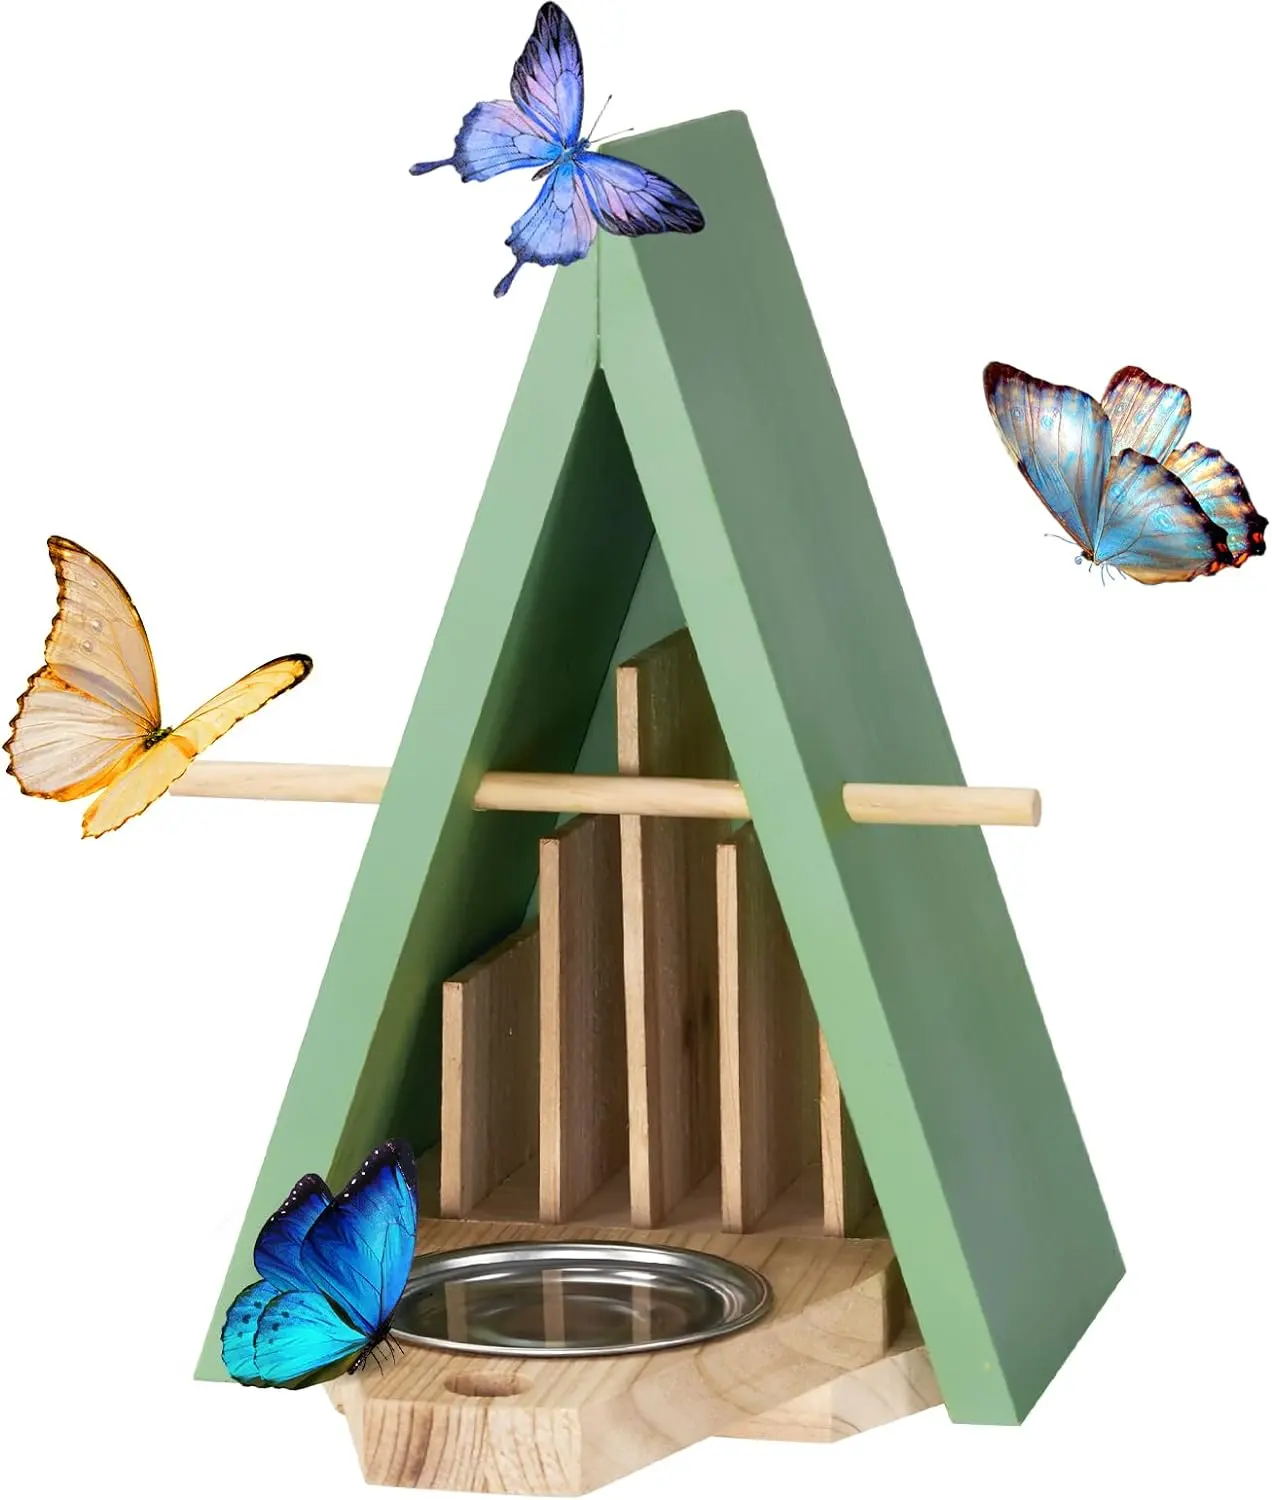 Casa de mariposas hecha a mano con pintura verde, alimentador de mariposas para exteriores, casas de mariposas de madera